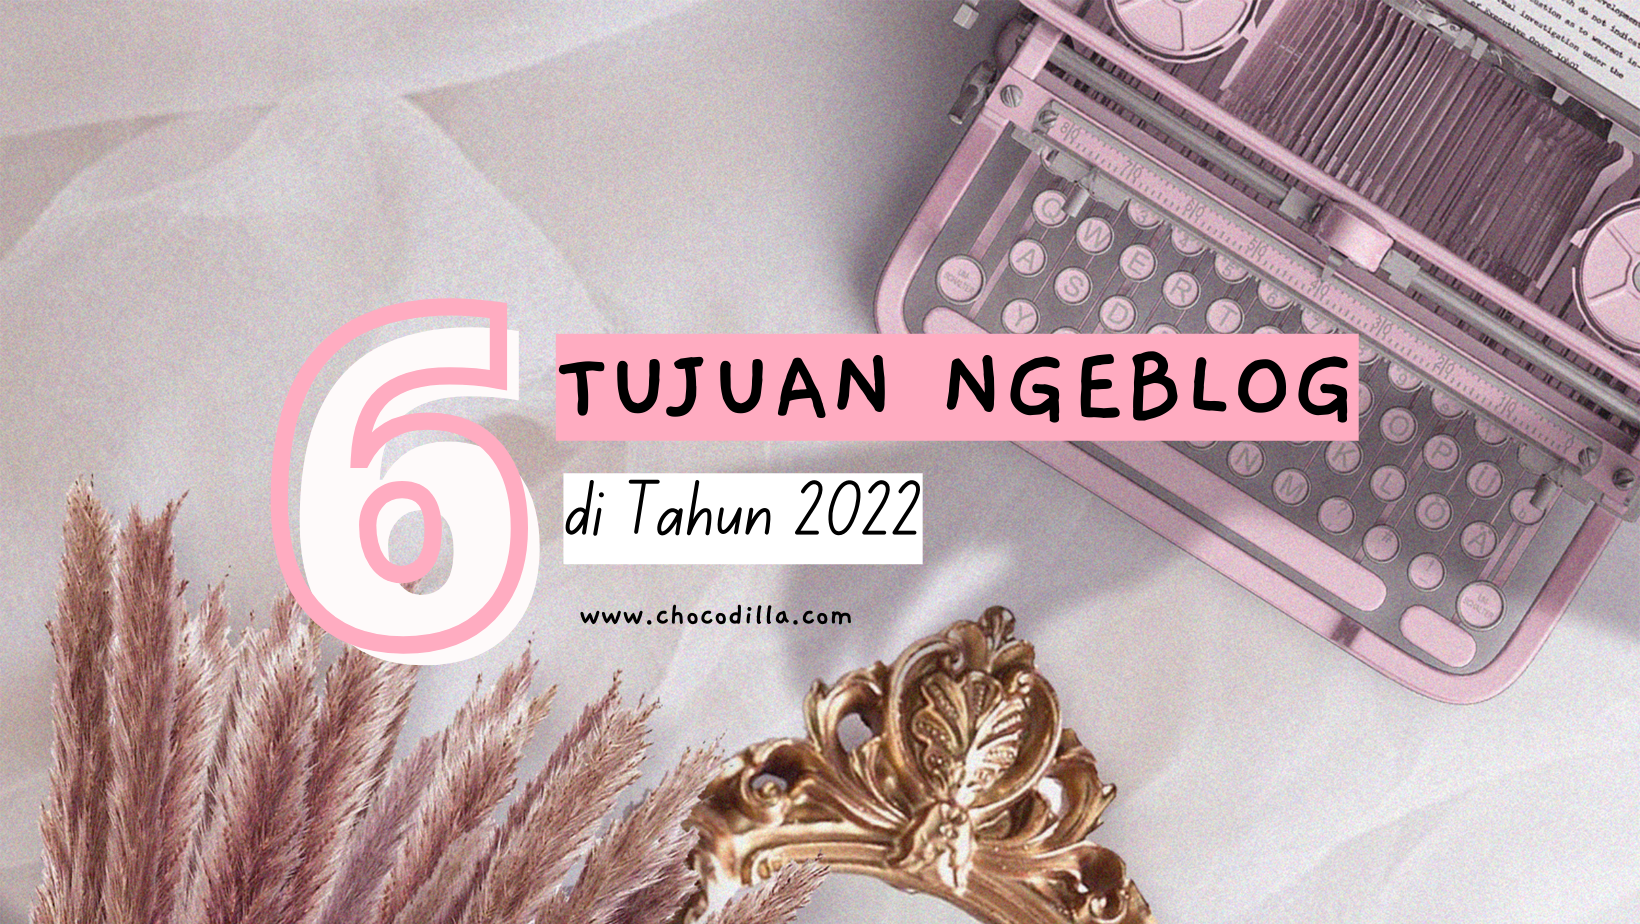 6 Tujuan Ngeblog di Tahun 2022